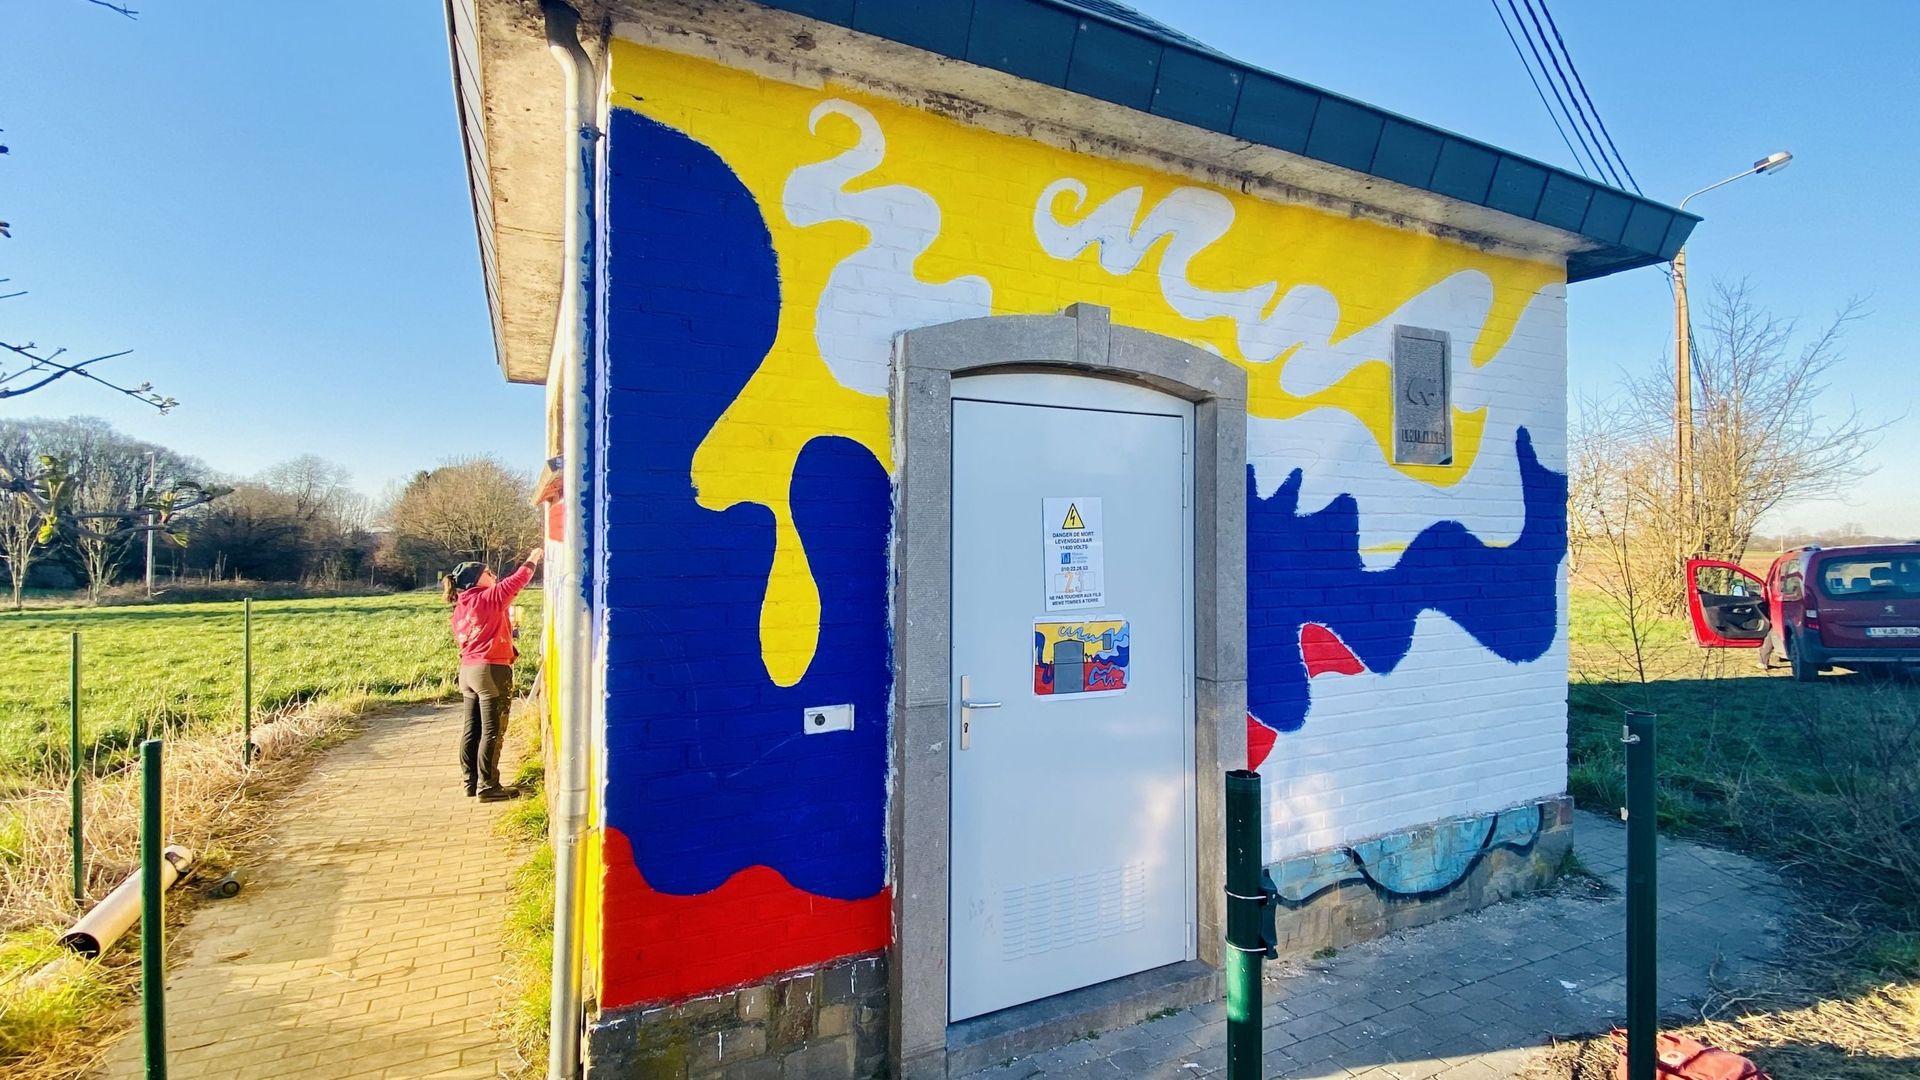 L'artiste Alice Poggio a coloré cette cabine située près du Domaine du Blé.